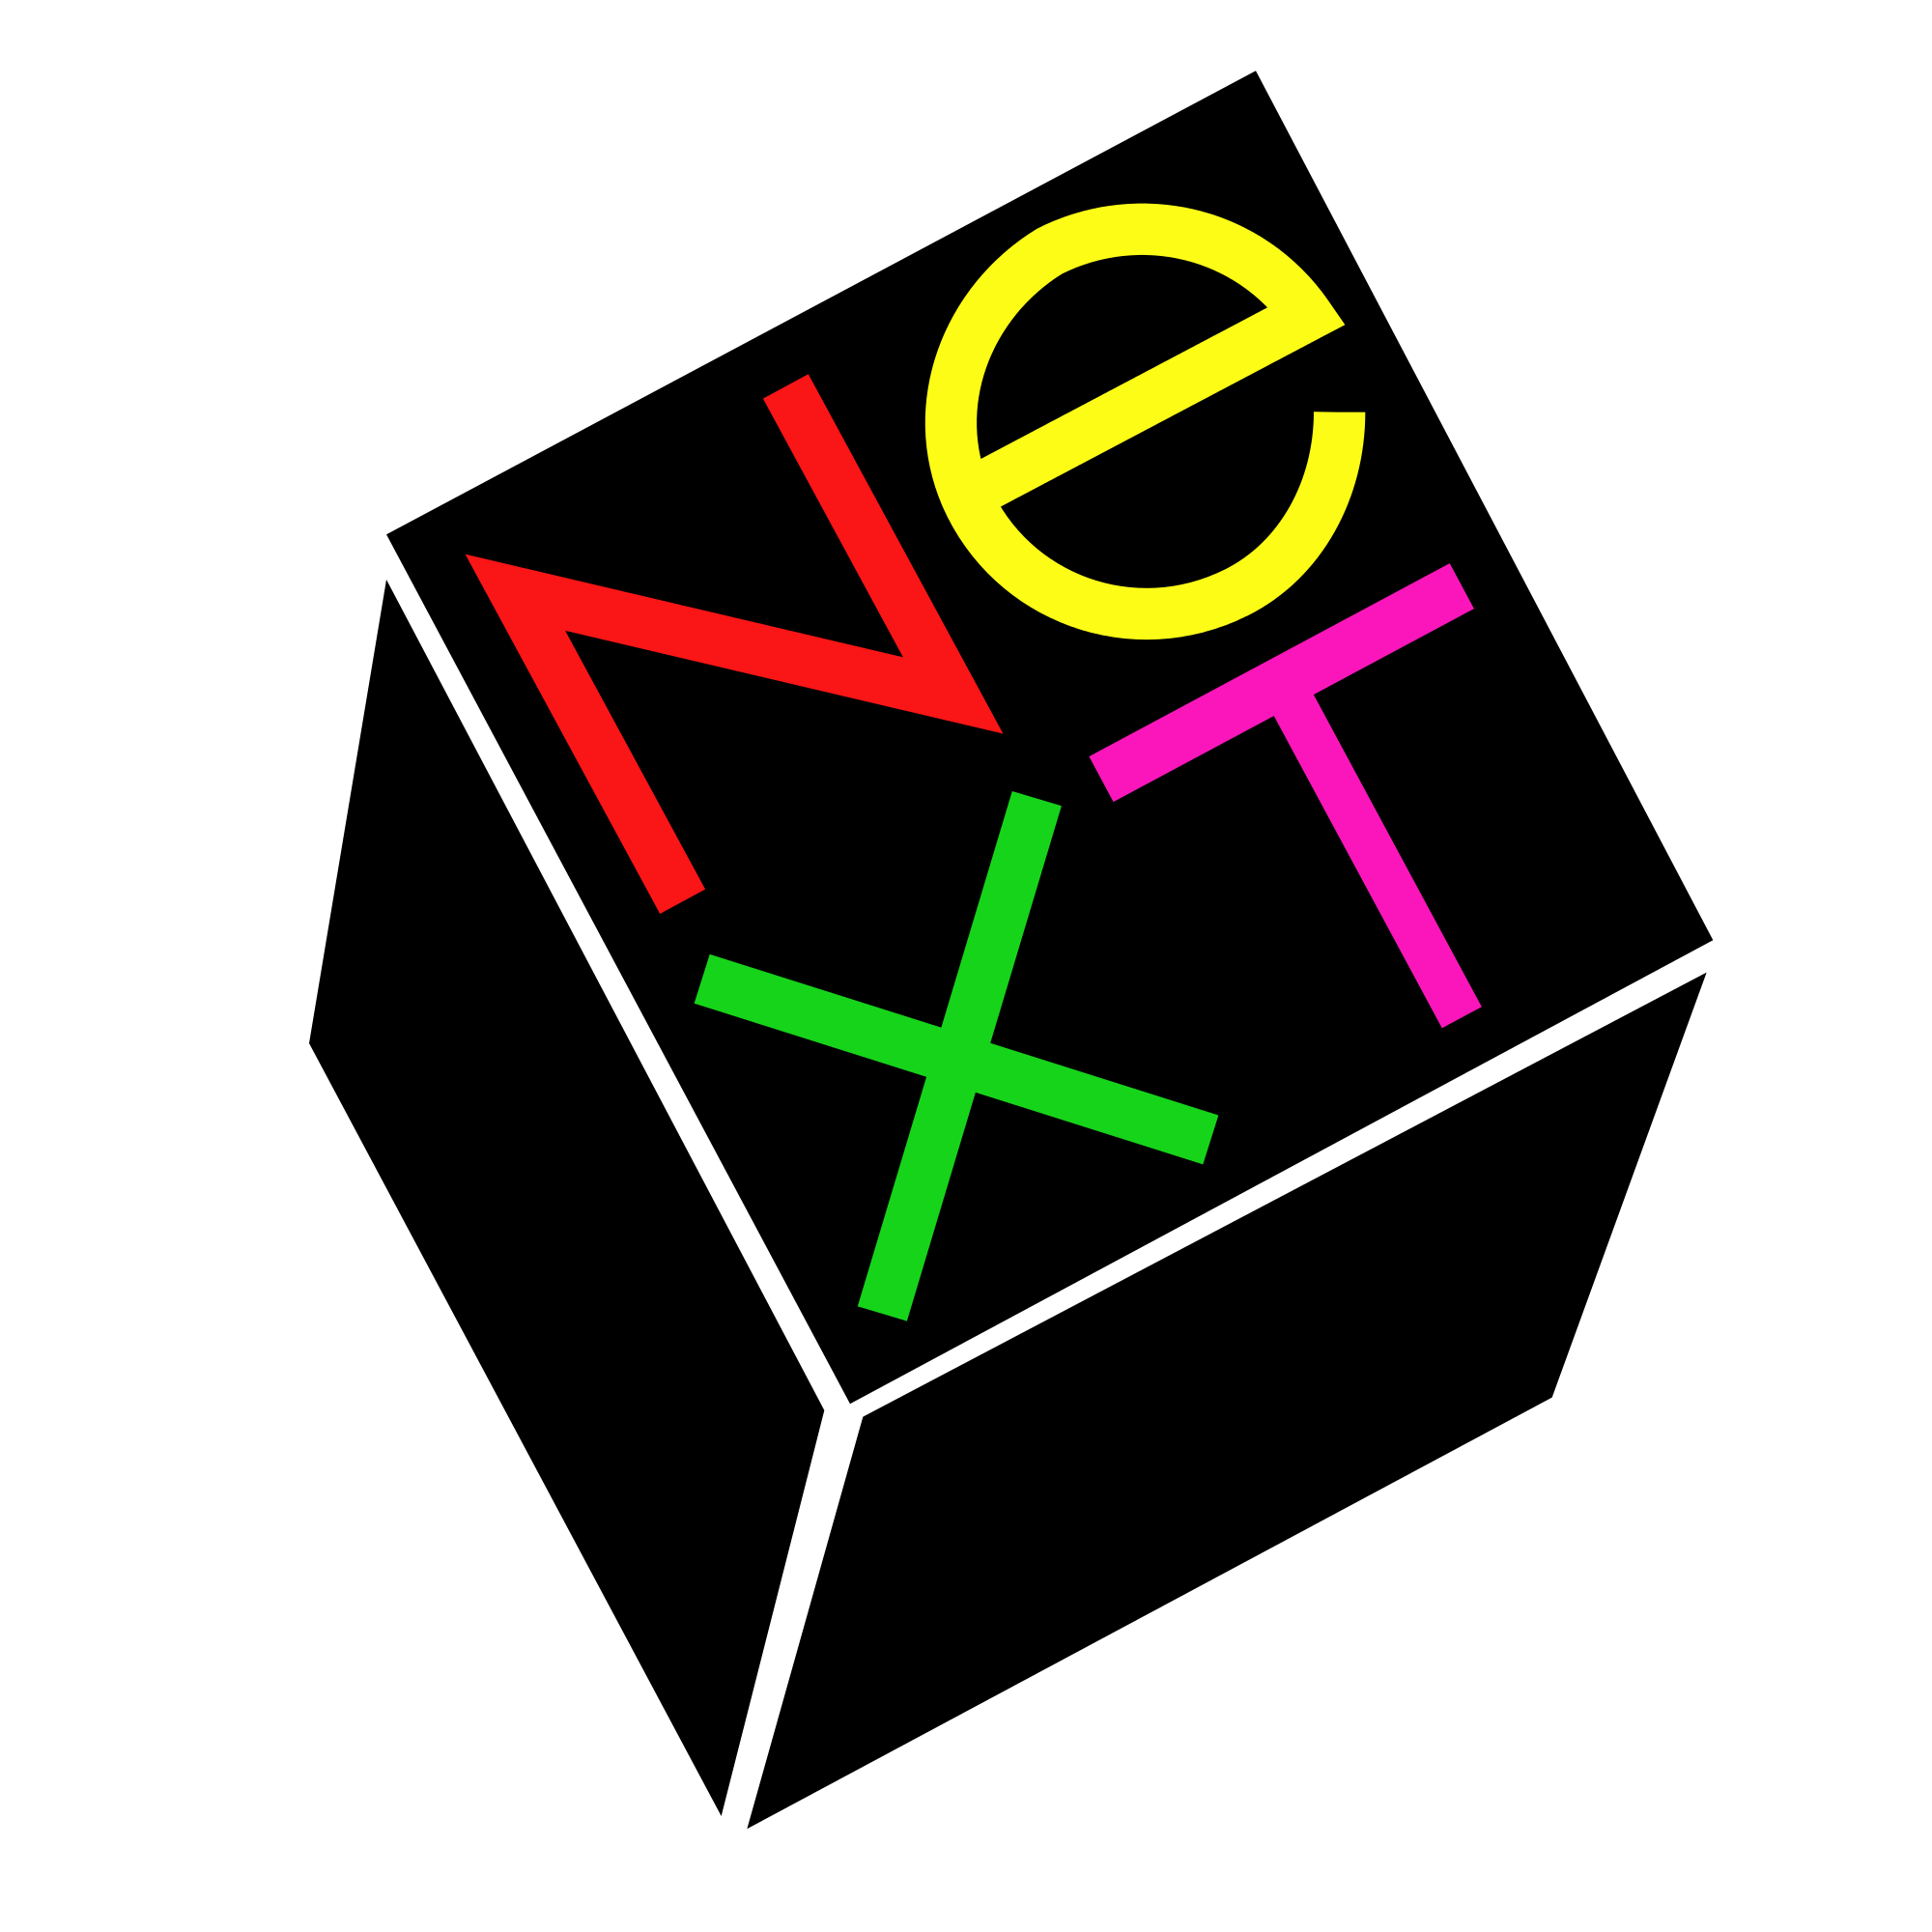 File:Next former logo.png